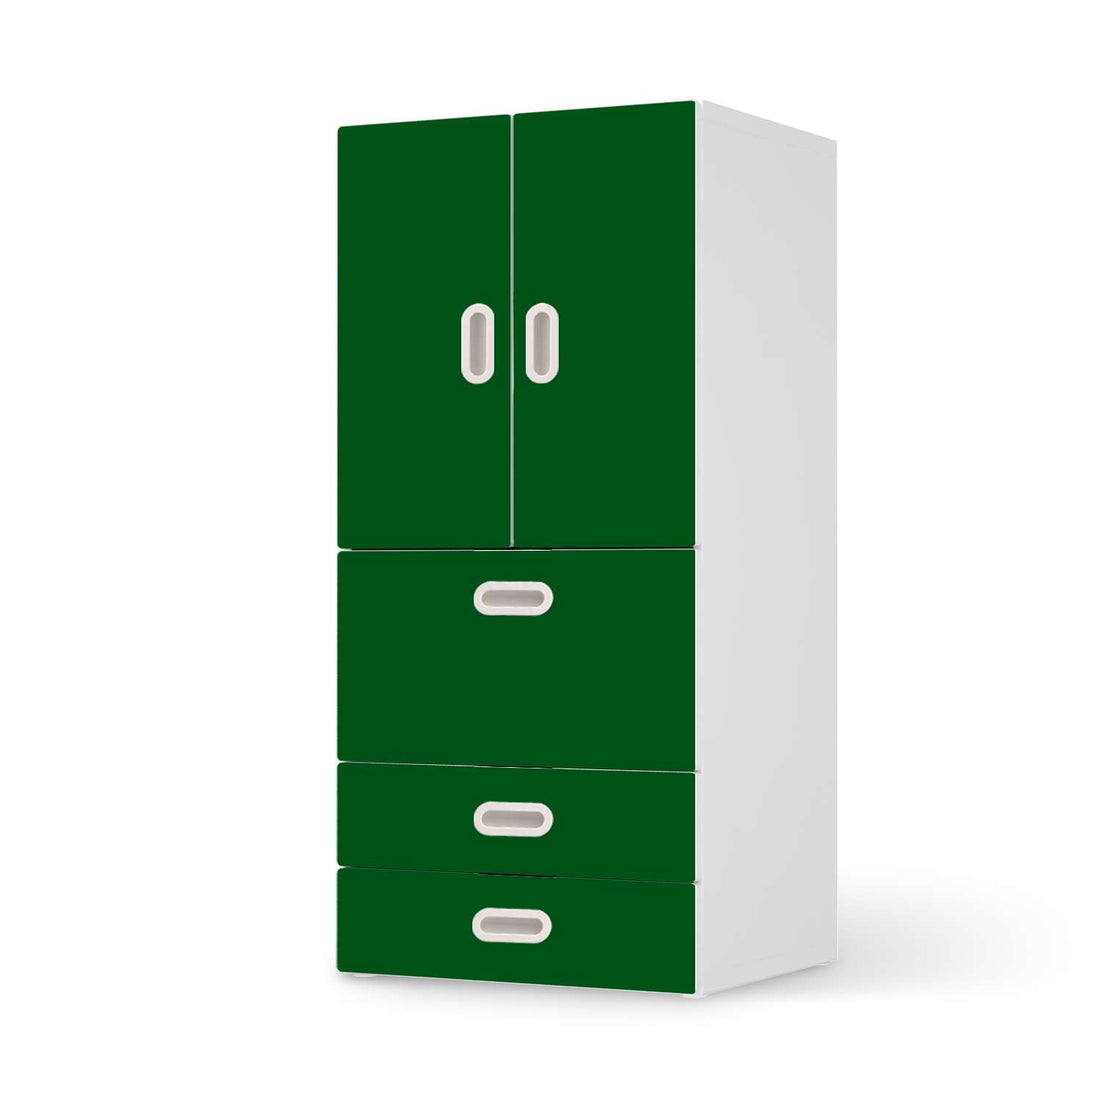 Möbelfolie Grün Dark - IKEA Stuva / Fritids kombiniert - 3 Schubladen und 2 kleine Türen  - weiss